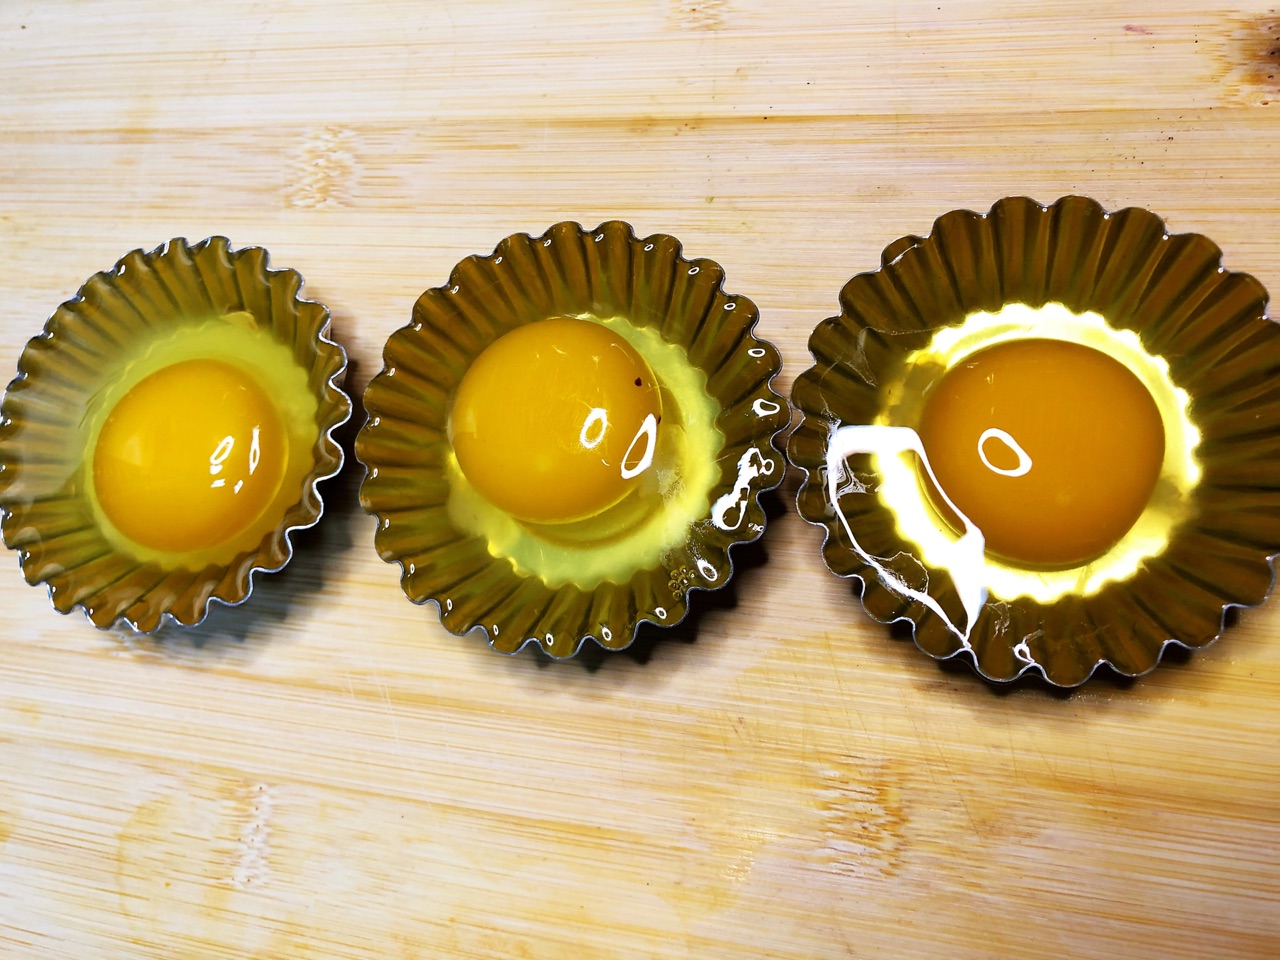 黄金太阳蛋的做法_【图解】黄金太阳蛋怎么做如何做好吃_黄金太阳蛋家常做法大全_冰妈厨房_豆果美食